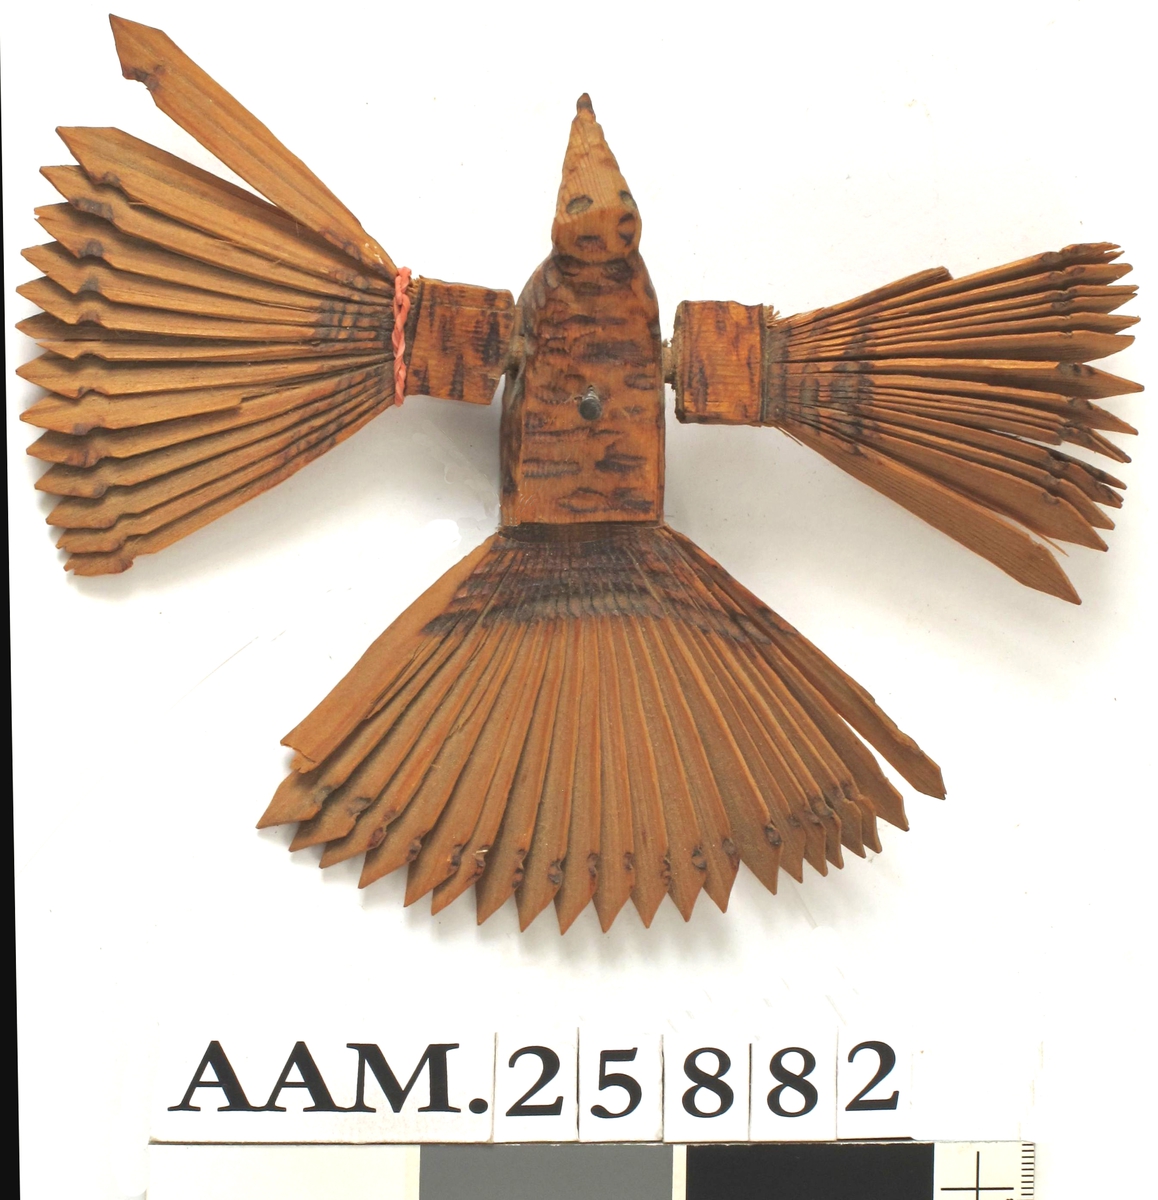 Form: Av 3 trestykker, hode, kropp stjert sammen, vingene av to stykker
